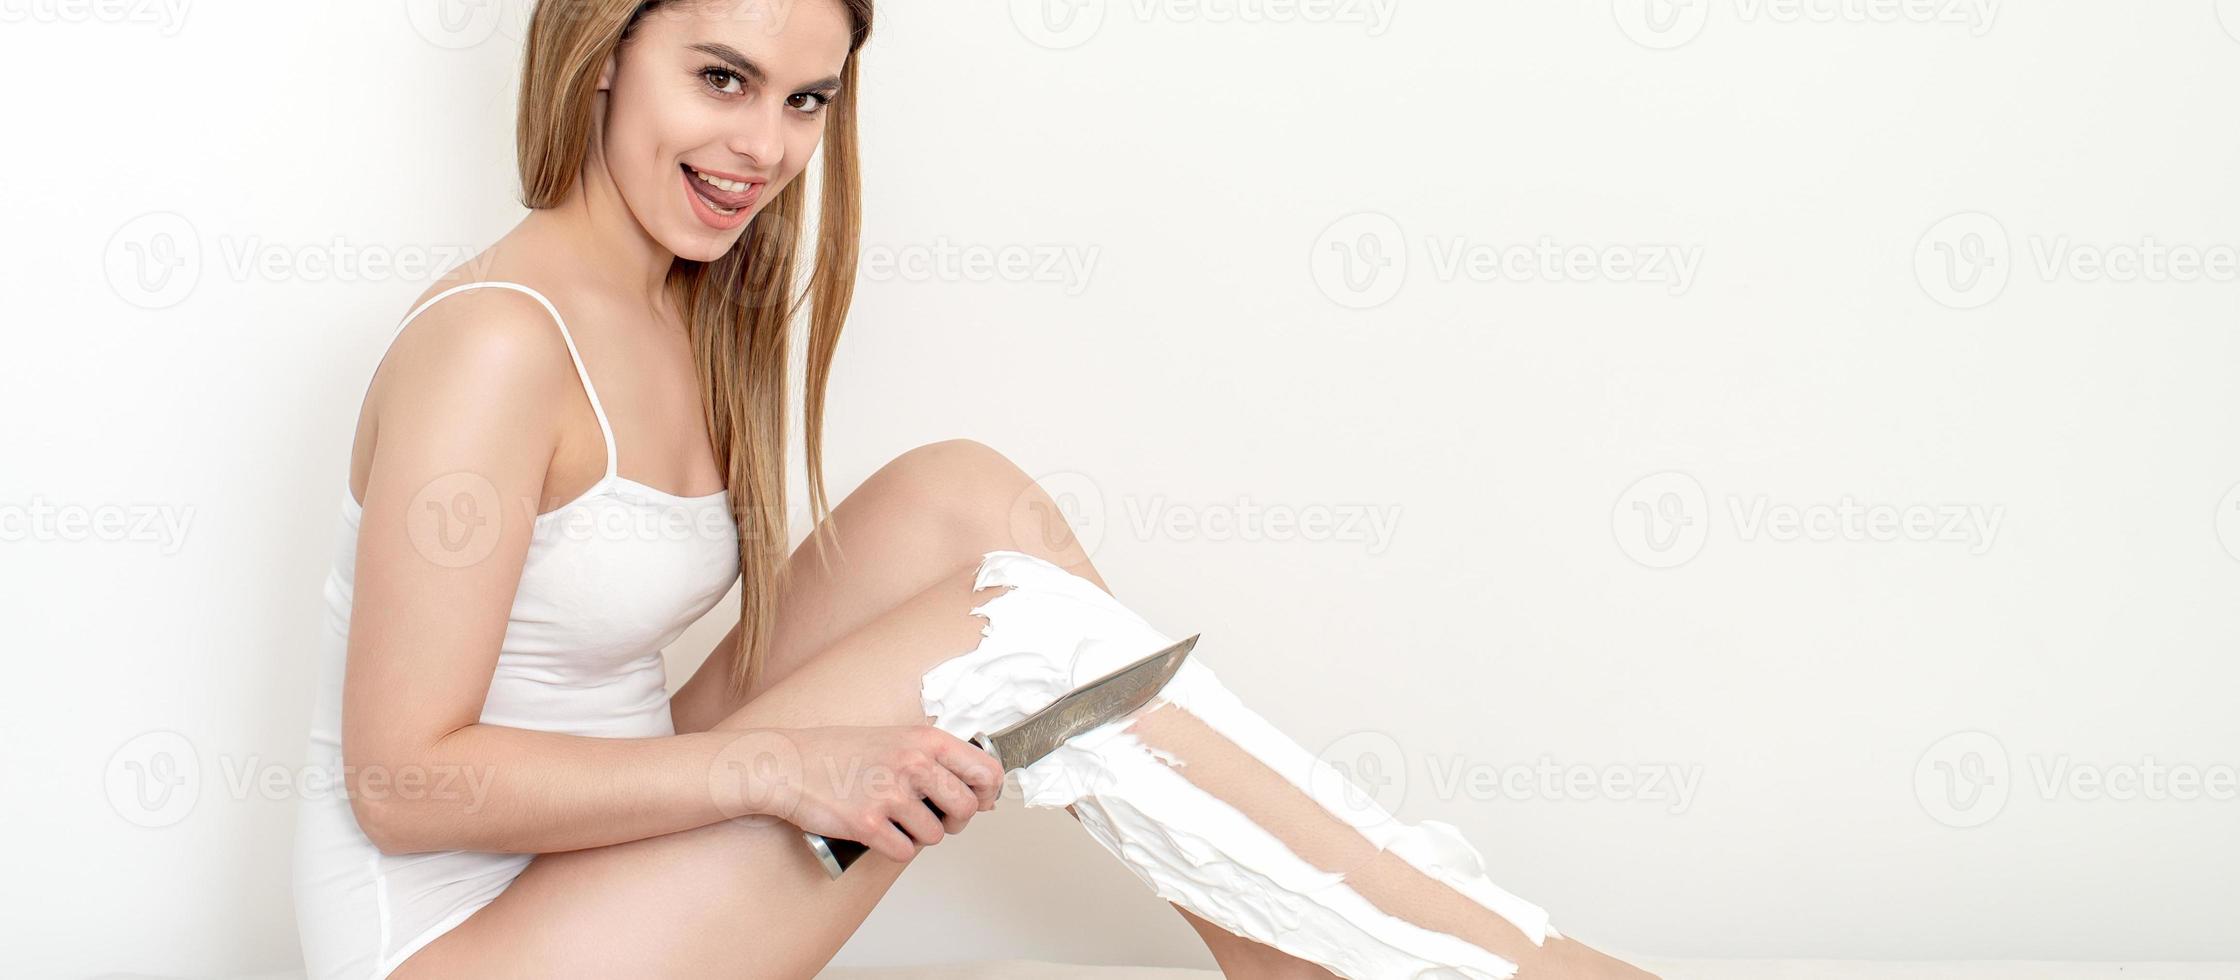 vrouw scheert haar poten met een mes foto